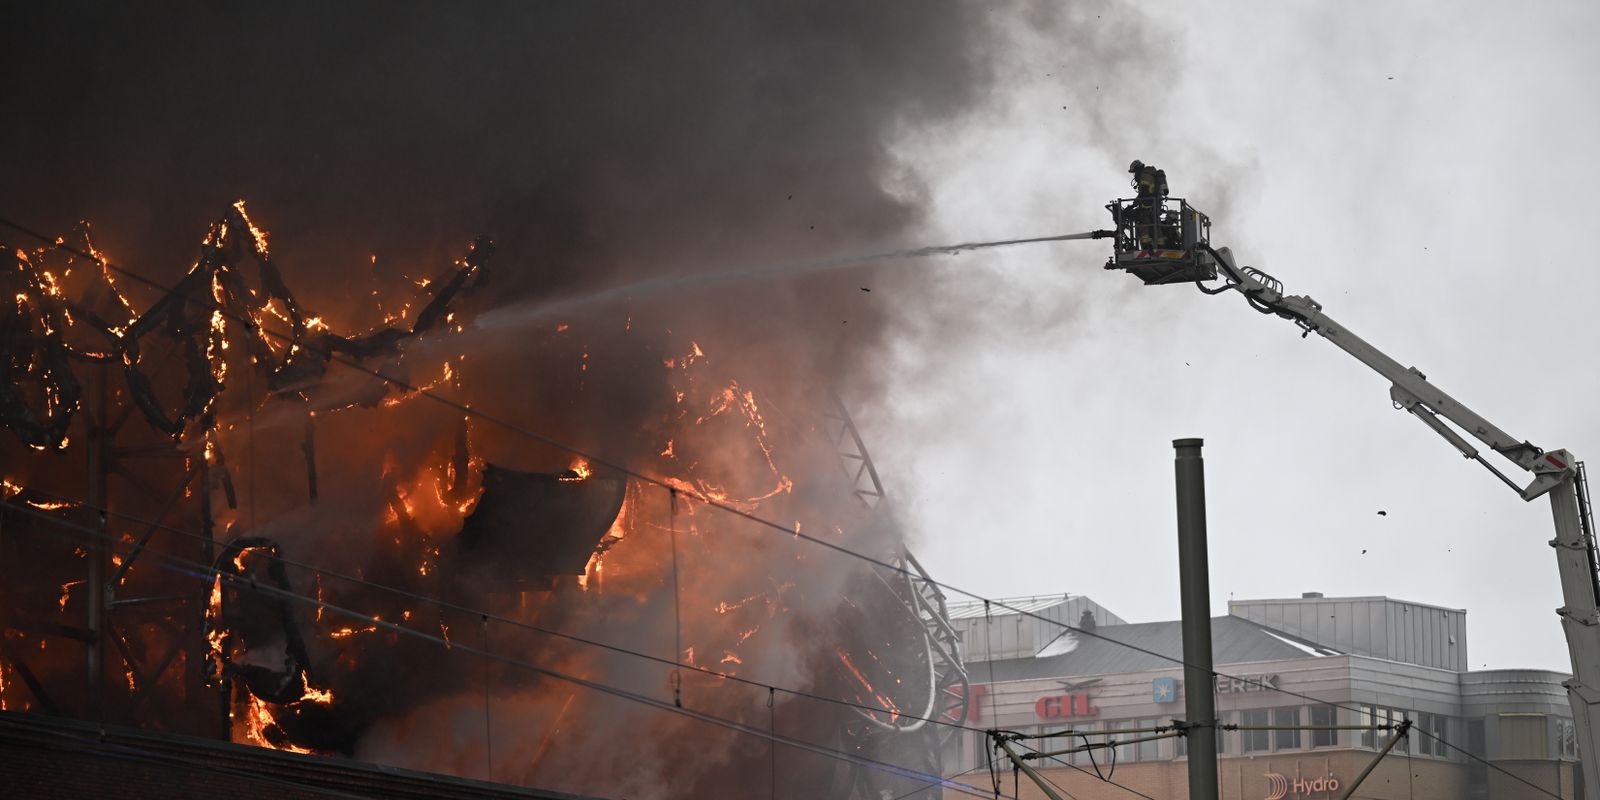 vittnet johan hörde ”enorm explosion” vid branden